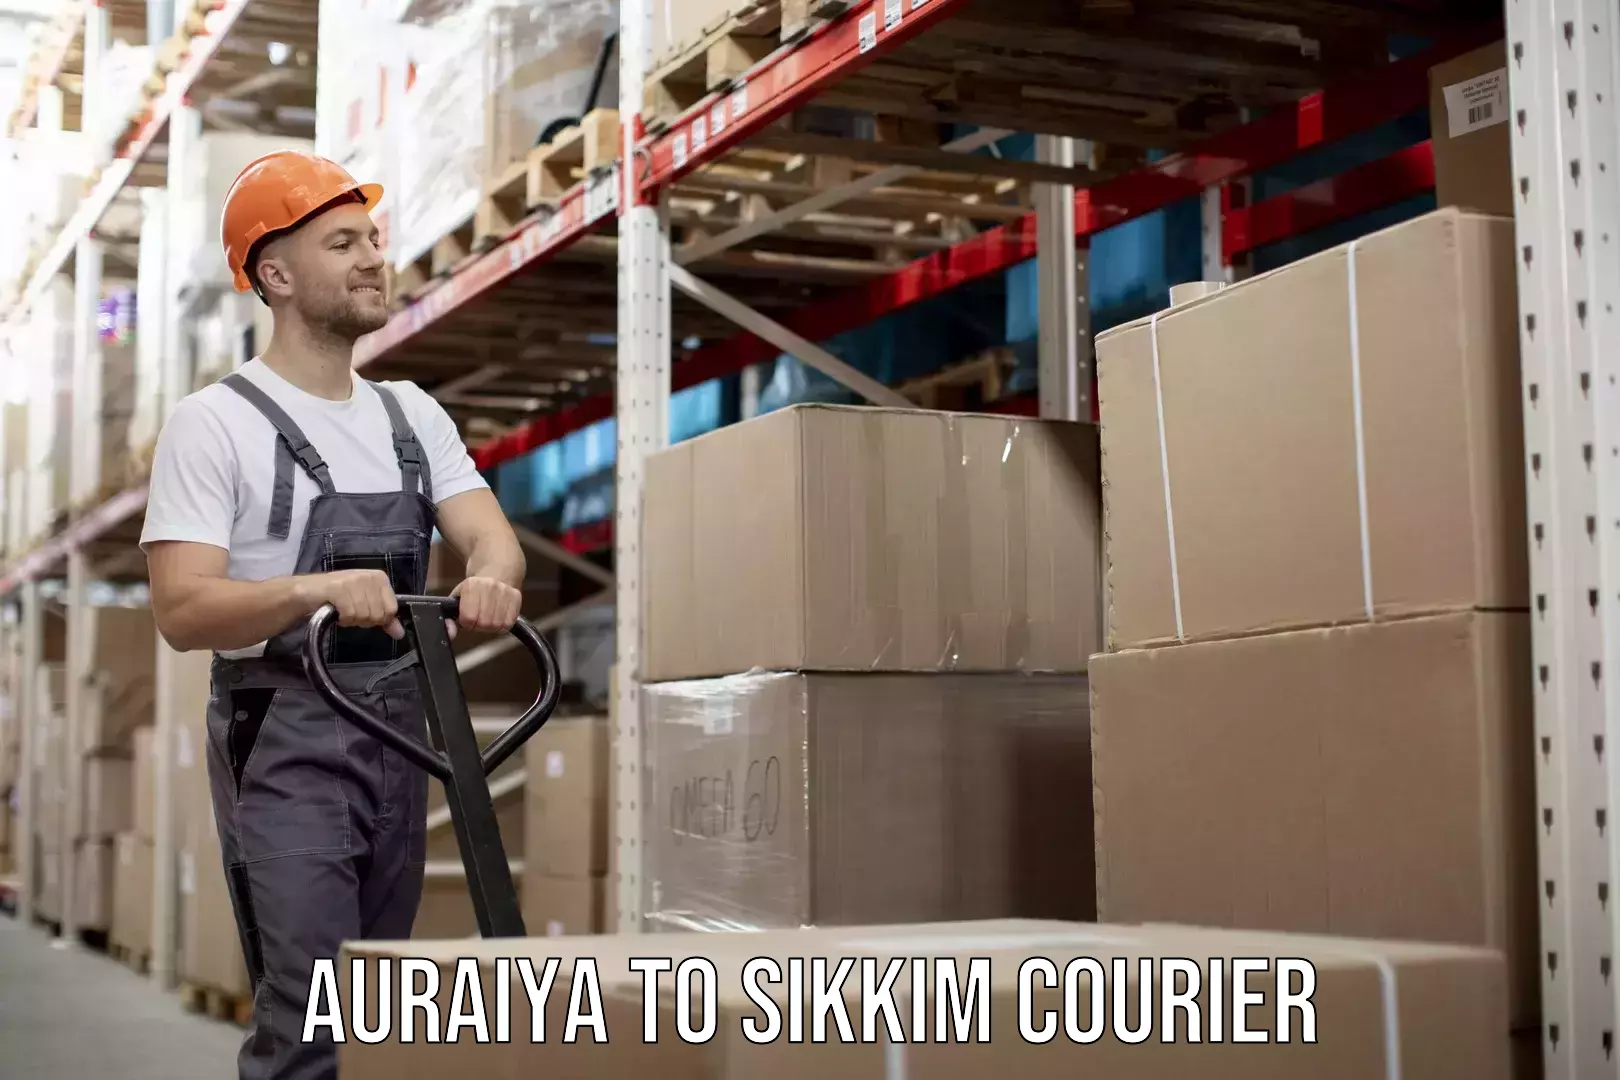 Modern courier technology Auraiya to Sikkim